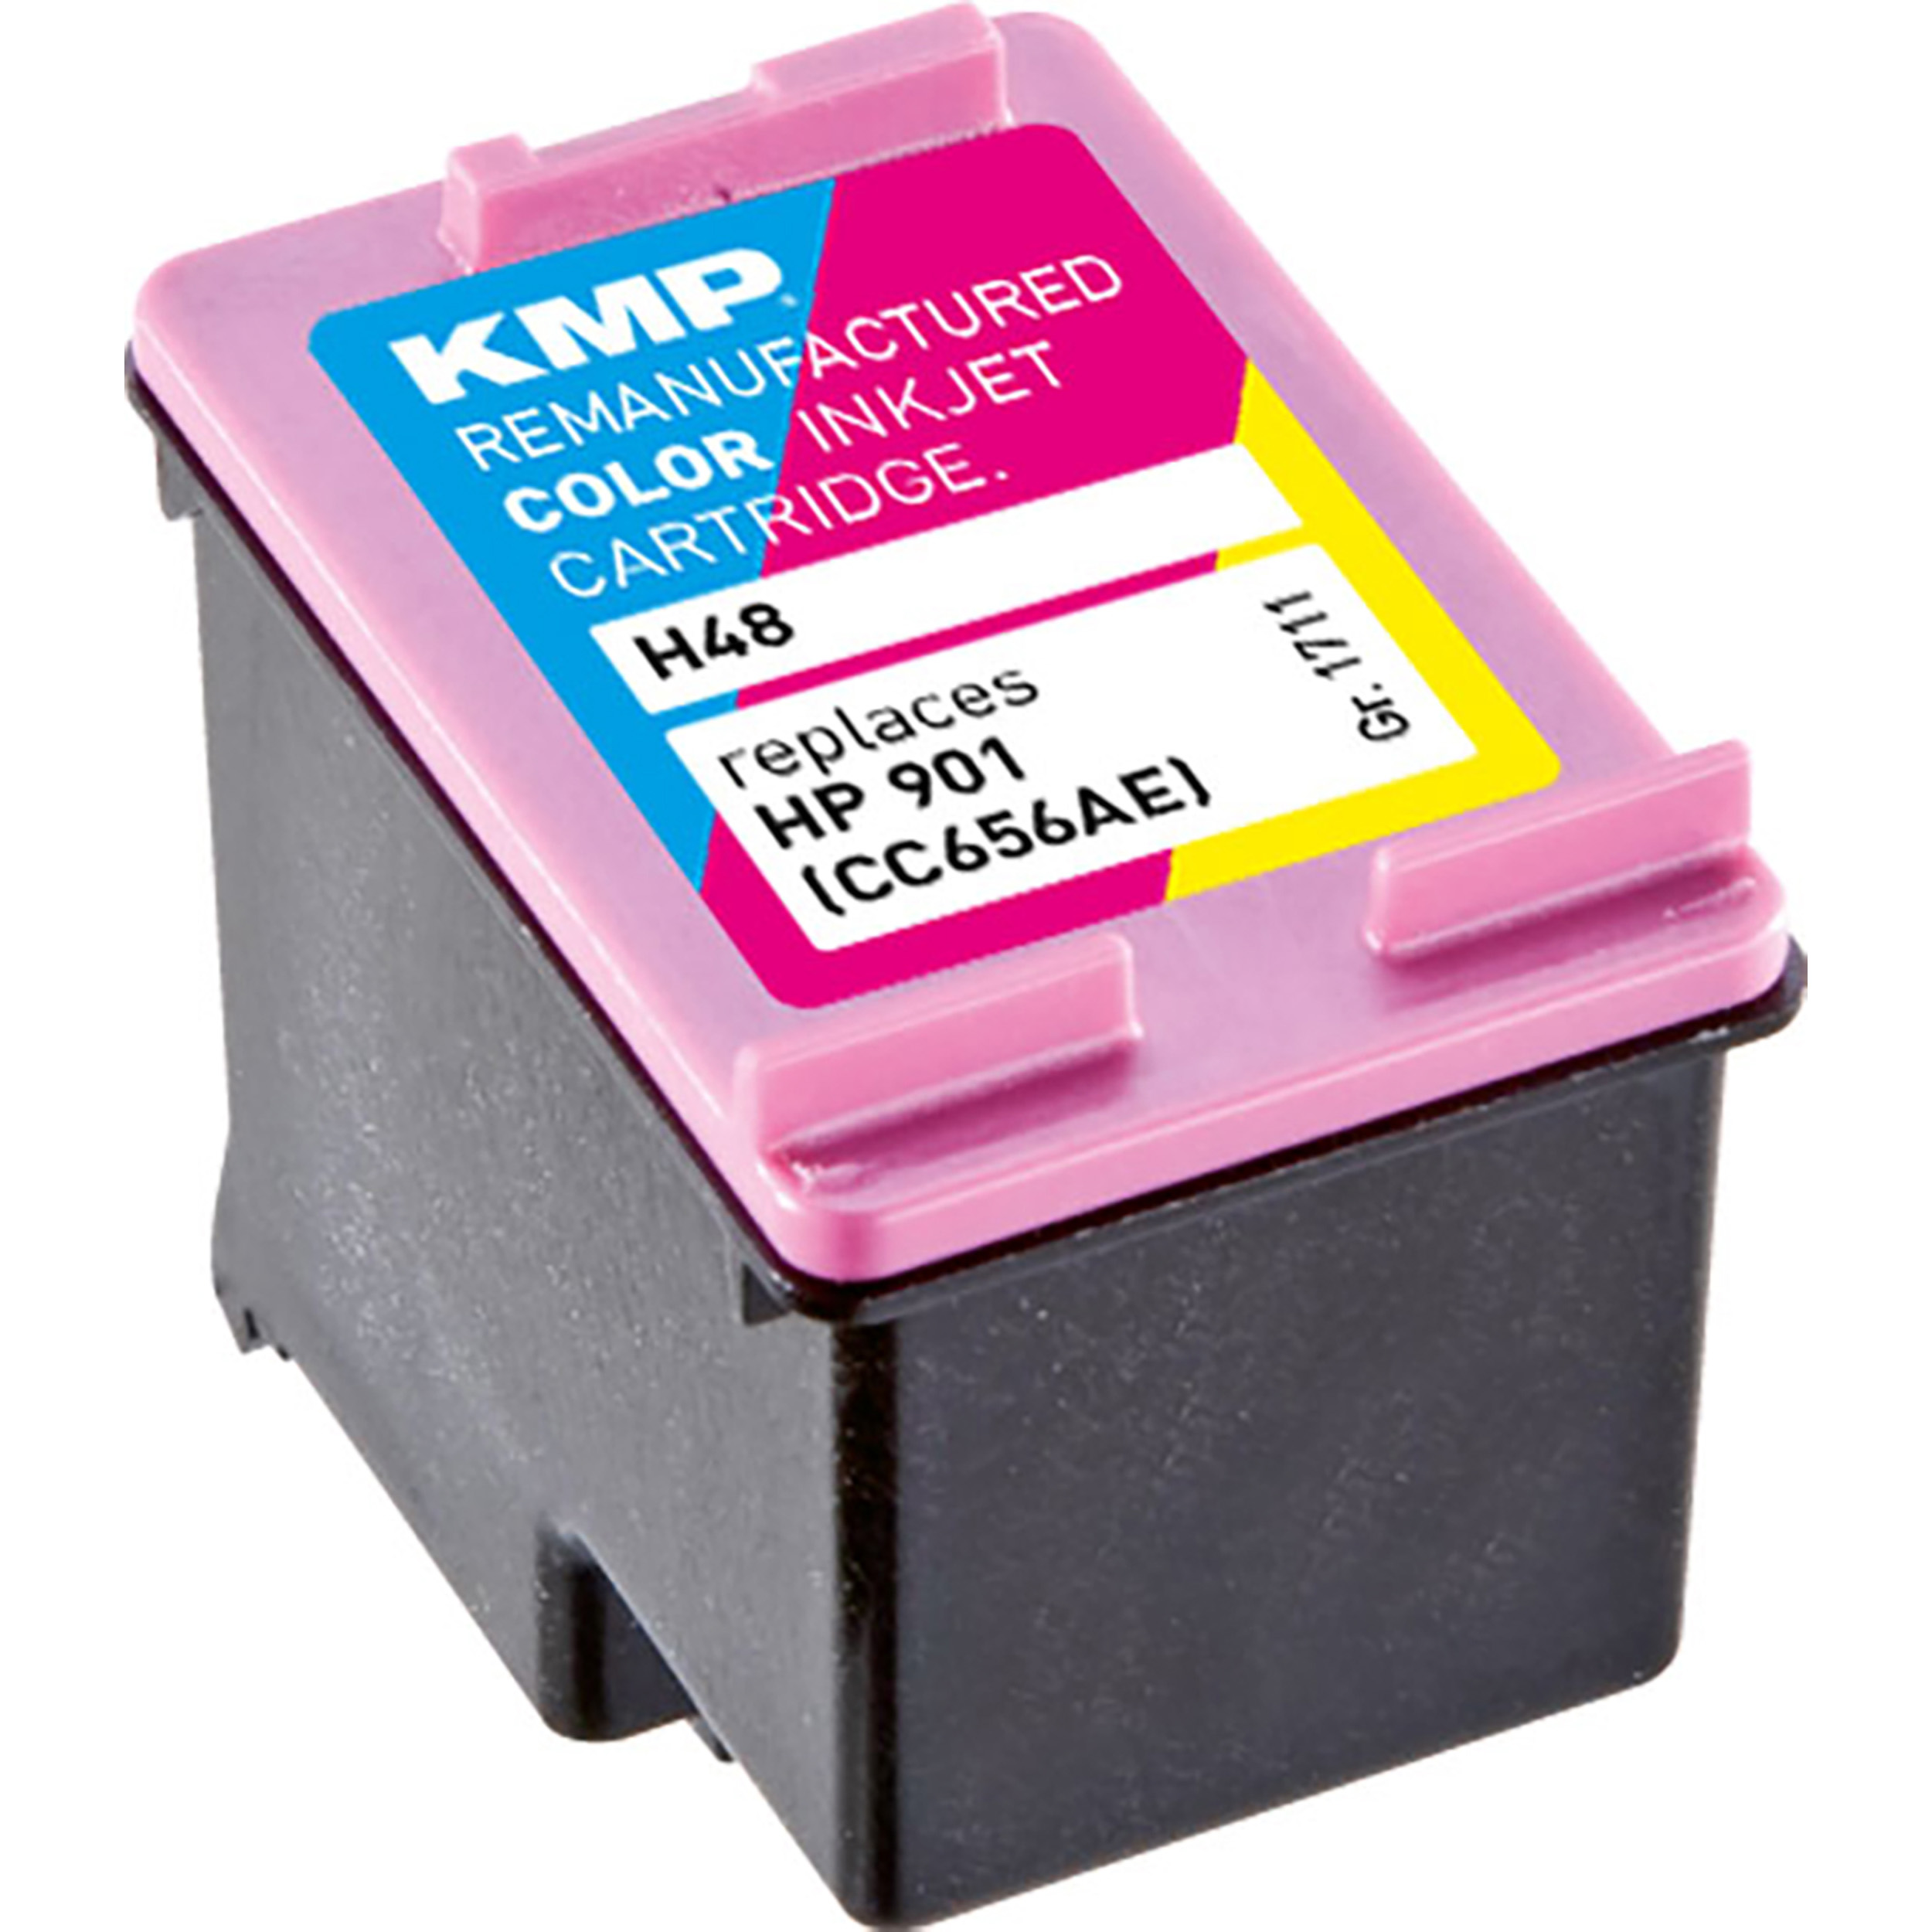 (CC656AE) C,M,Y KMP 3-farbig Tintenpatrone (CC656AE) Cartridge für 3-farbig 901 HP Ink